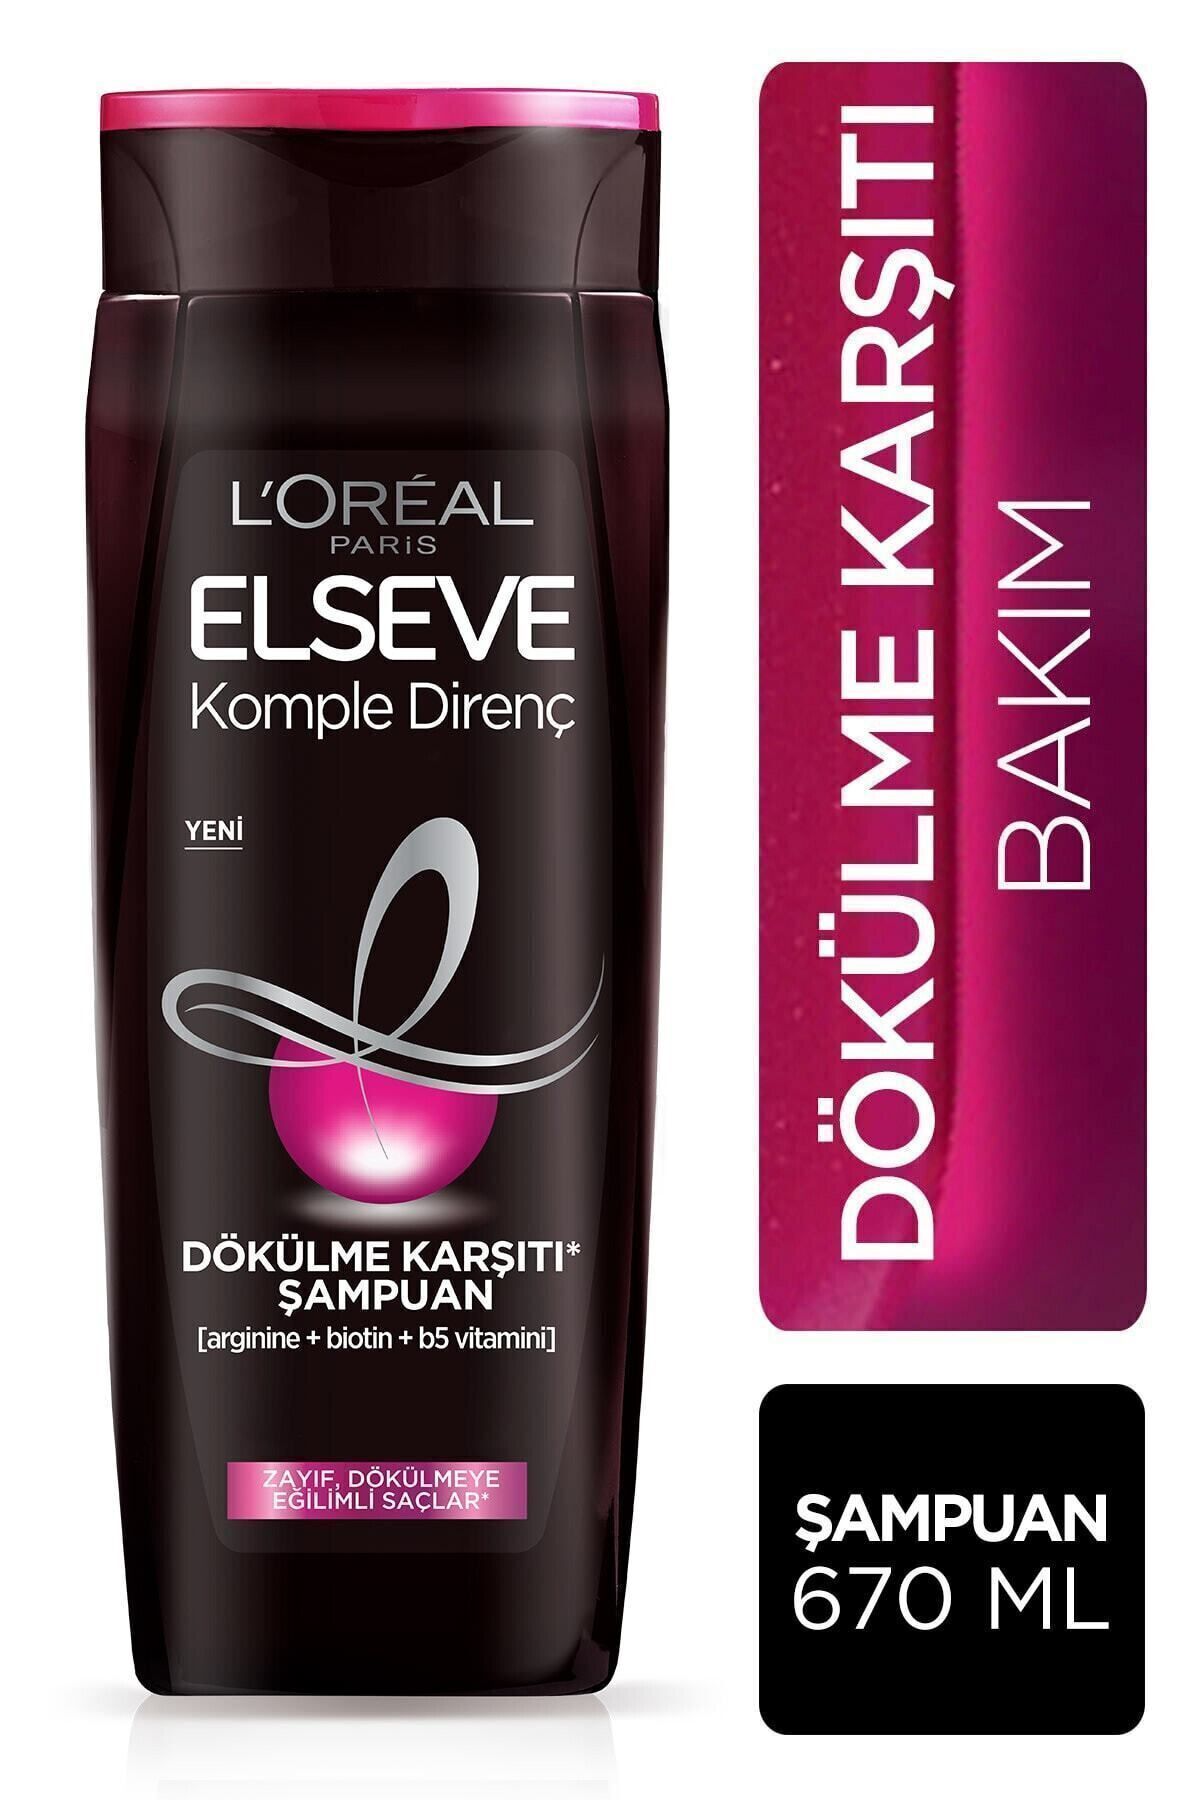 Elseve L'oréal Paris Komple Direnç Dökülme Karşıtı Şampuan 670 Ml